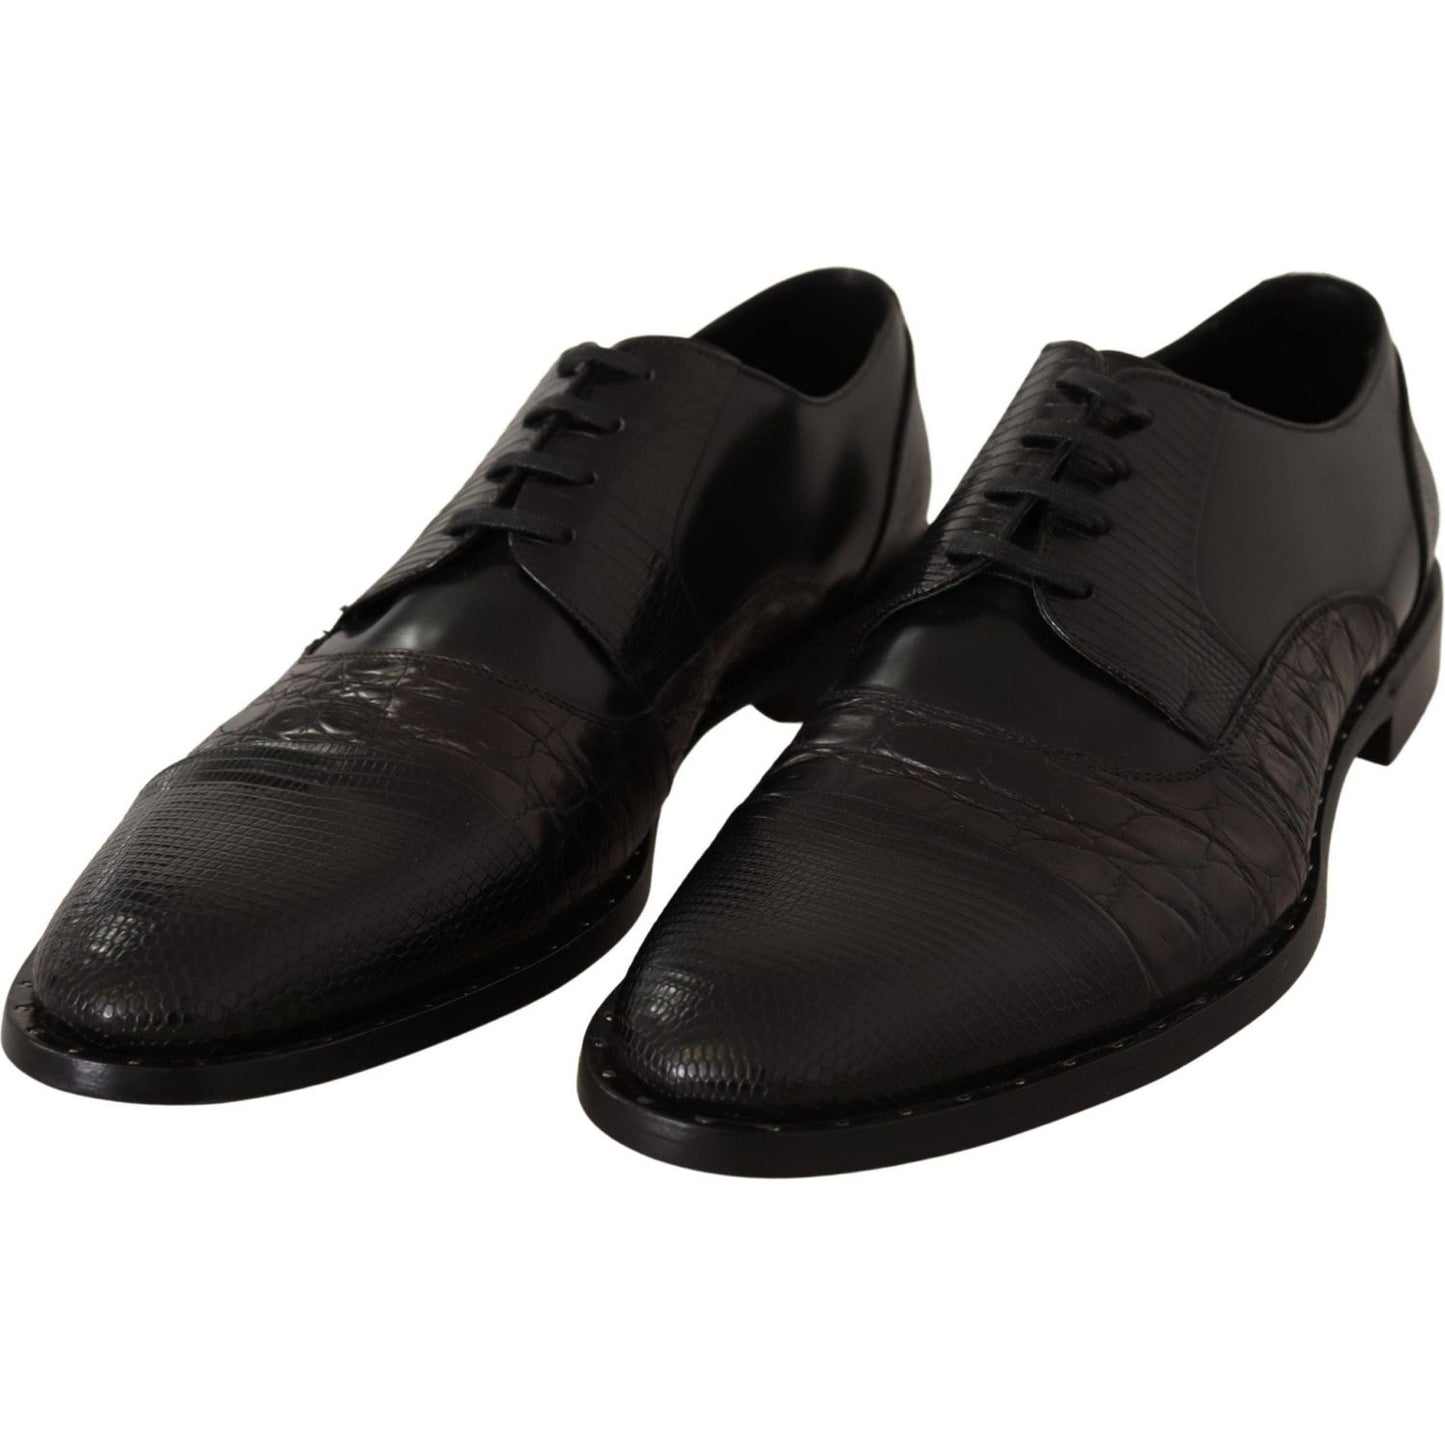 Dolce & Gabbana Elegant Black Derby Oxford Wingtips black-leather-exotic-skins-formal-shoes